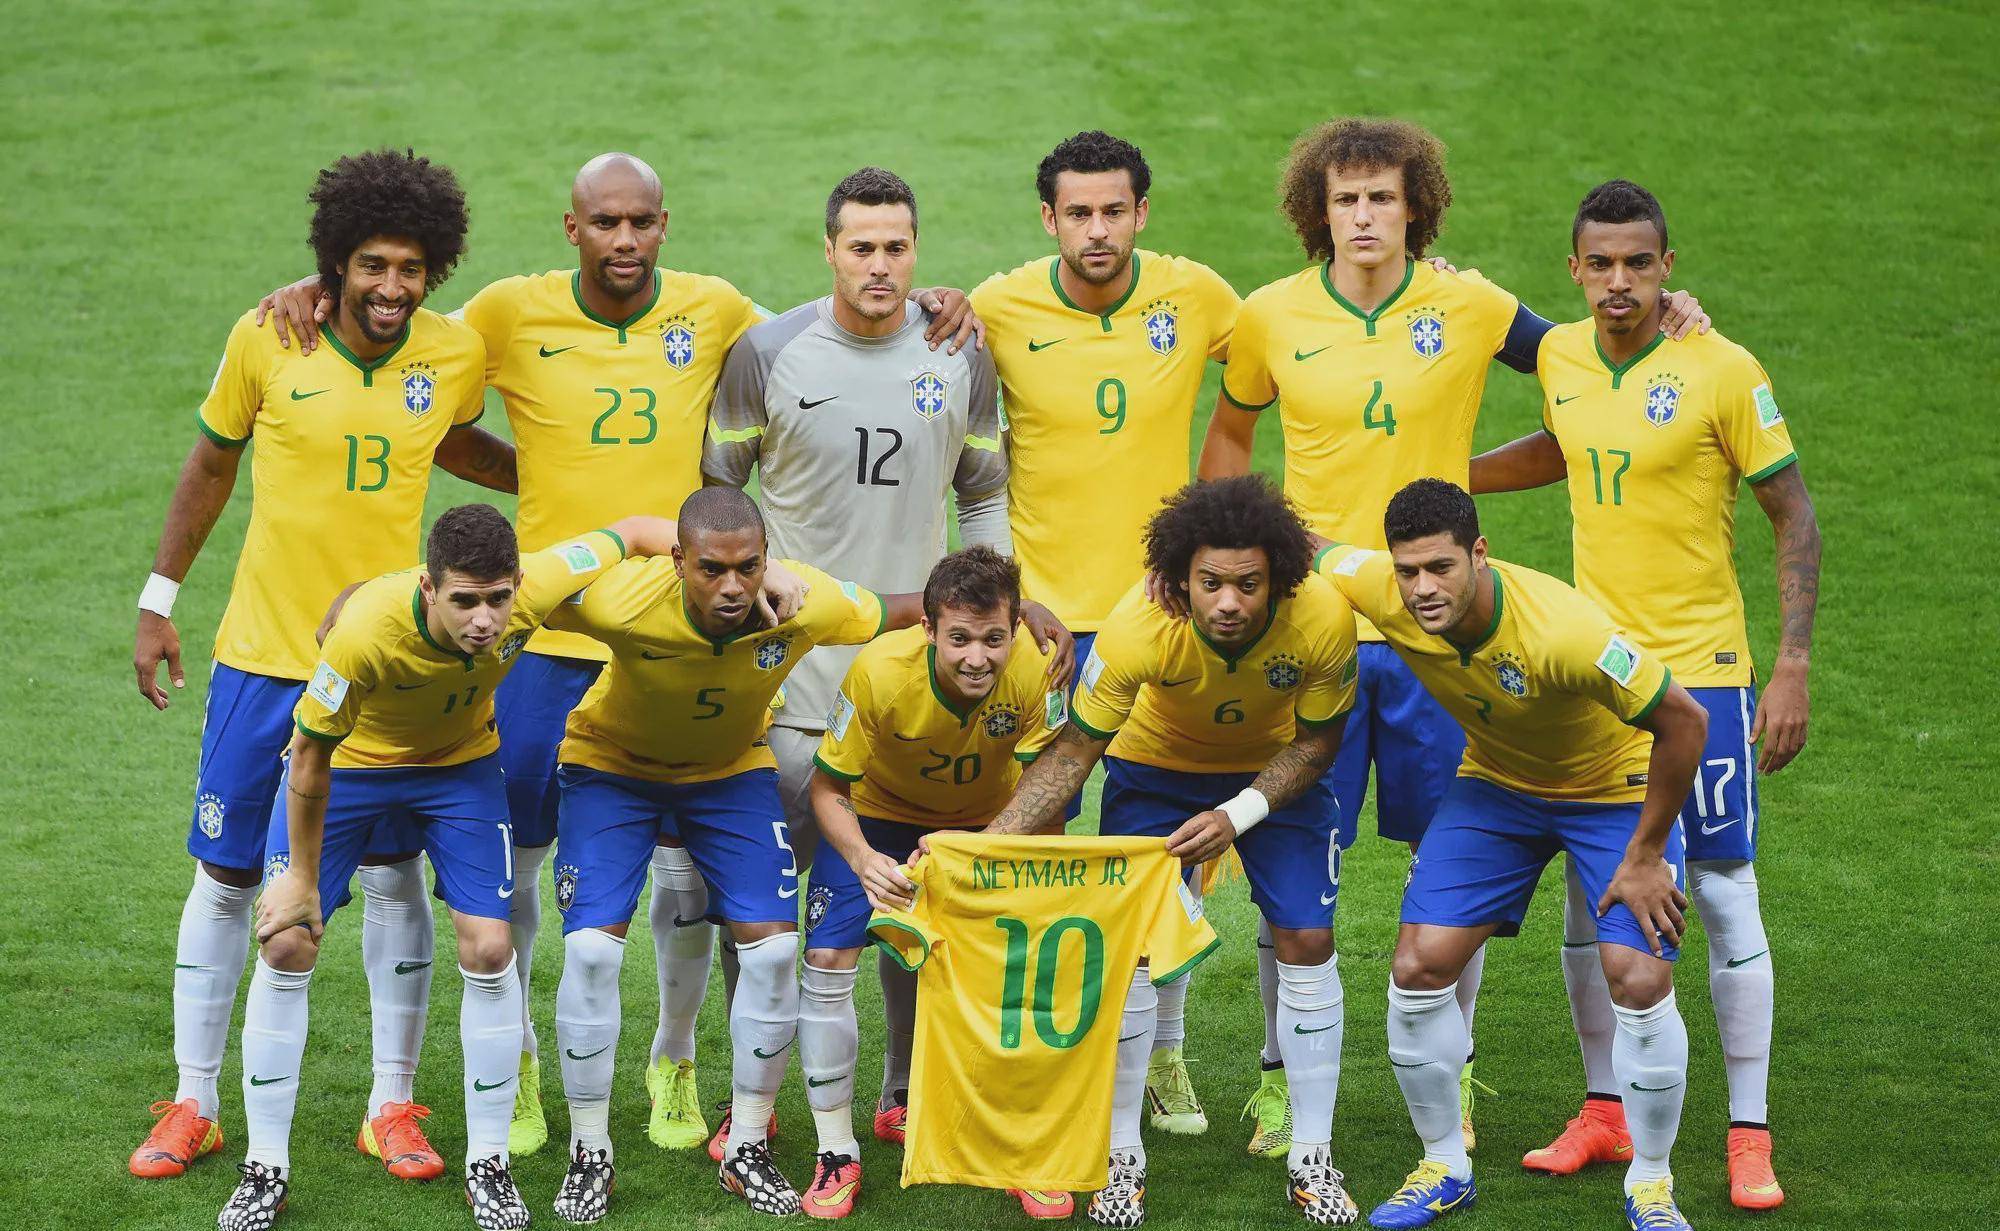 原创南美足球两强,为何阿根廷全是白人,巴西队却多是混血?